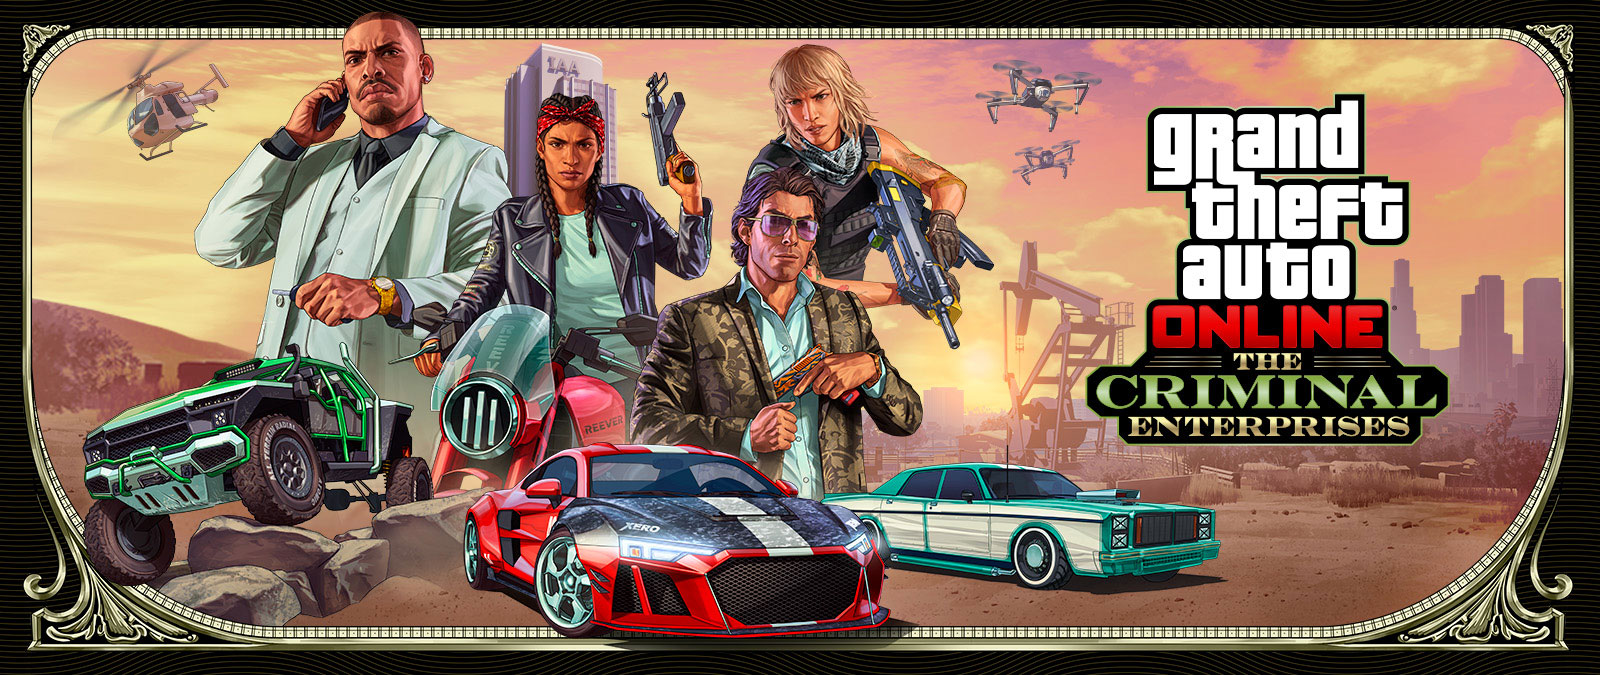 Grand Theft Auto Online: The Criminal Enterprises, três veículos estilosos correm em primeiro plano com quatro personagens acima.